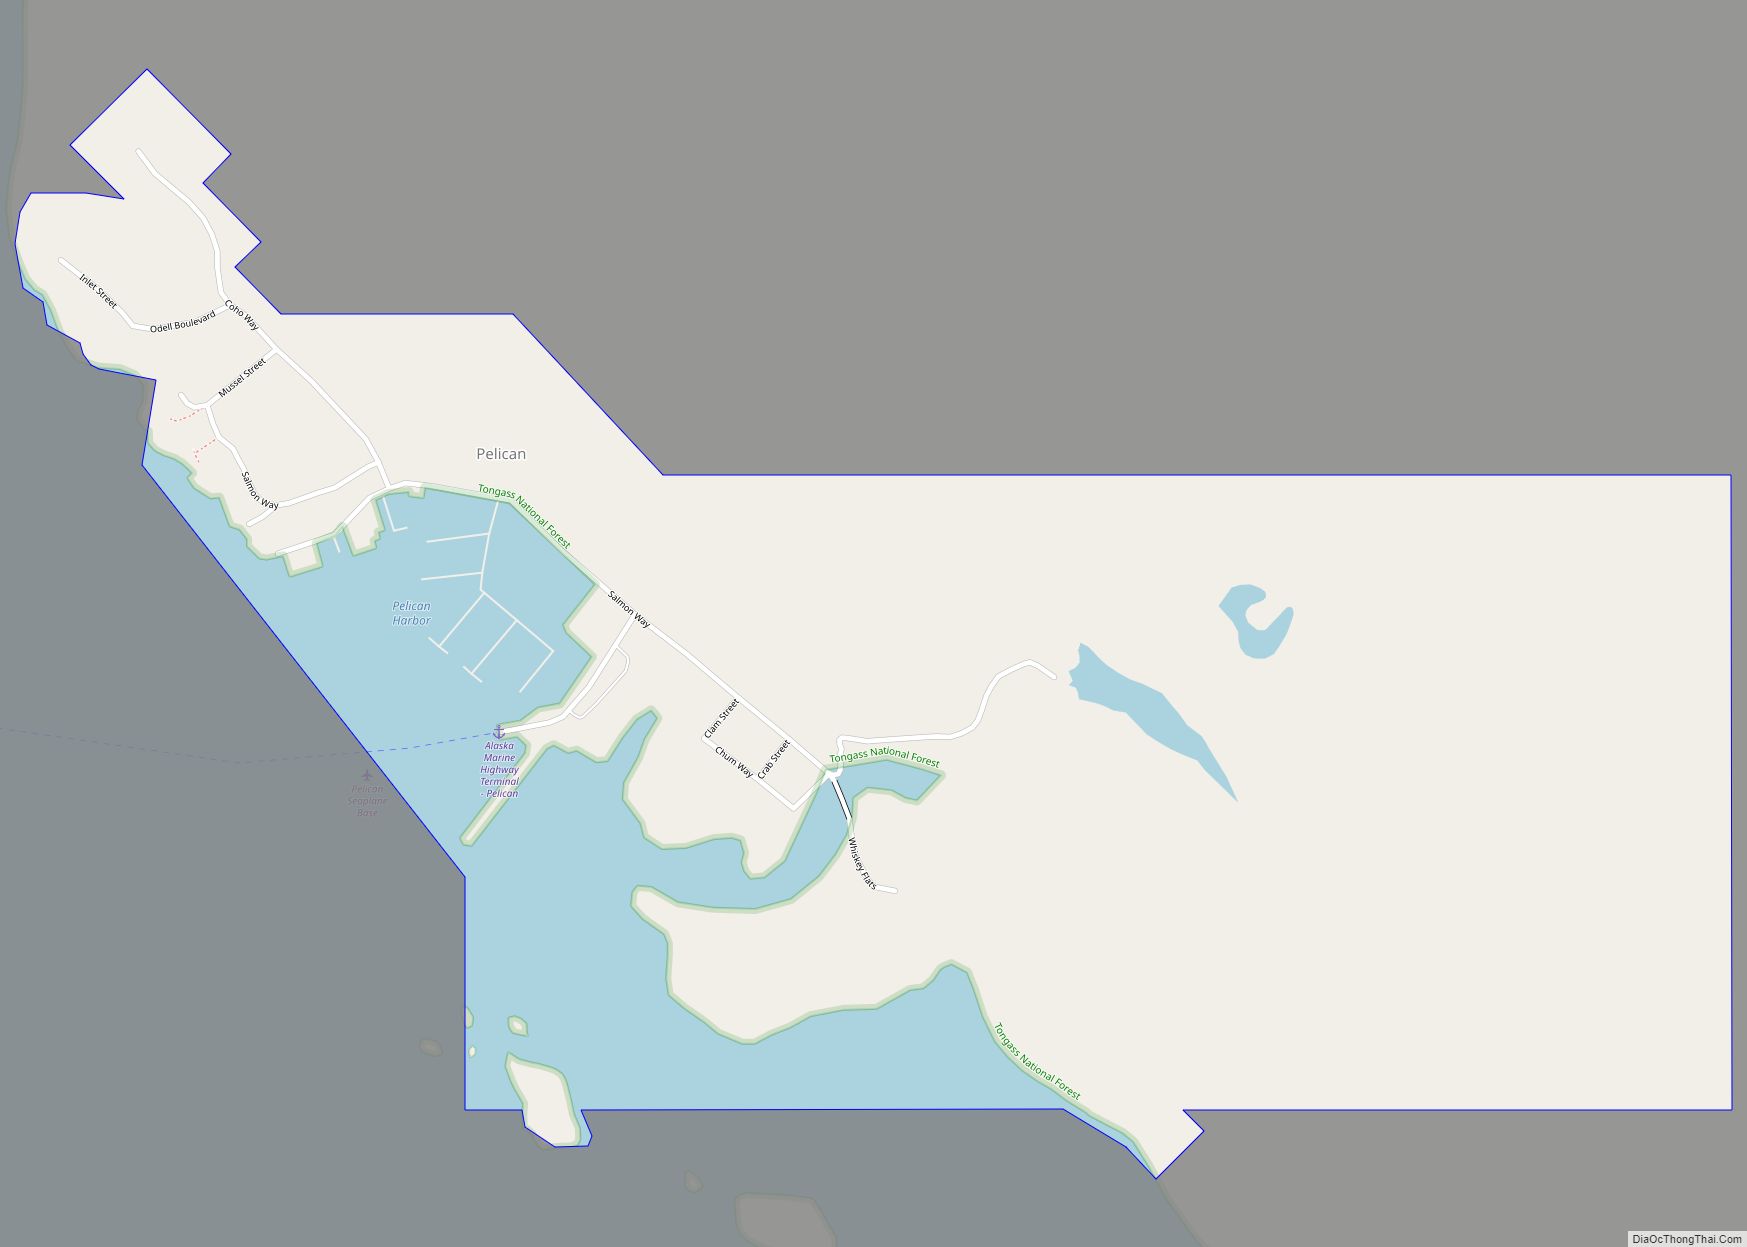 Map of Pelican city